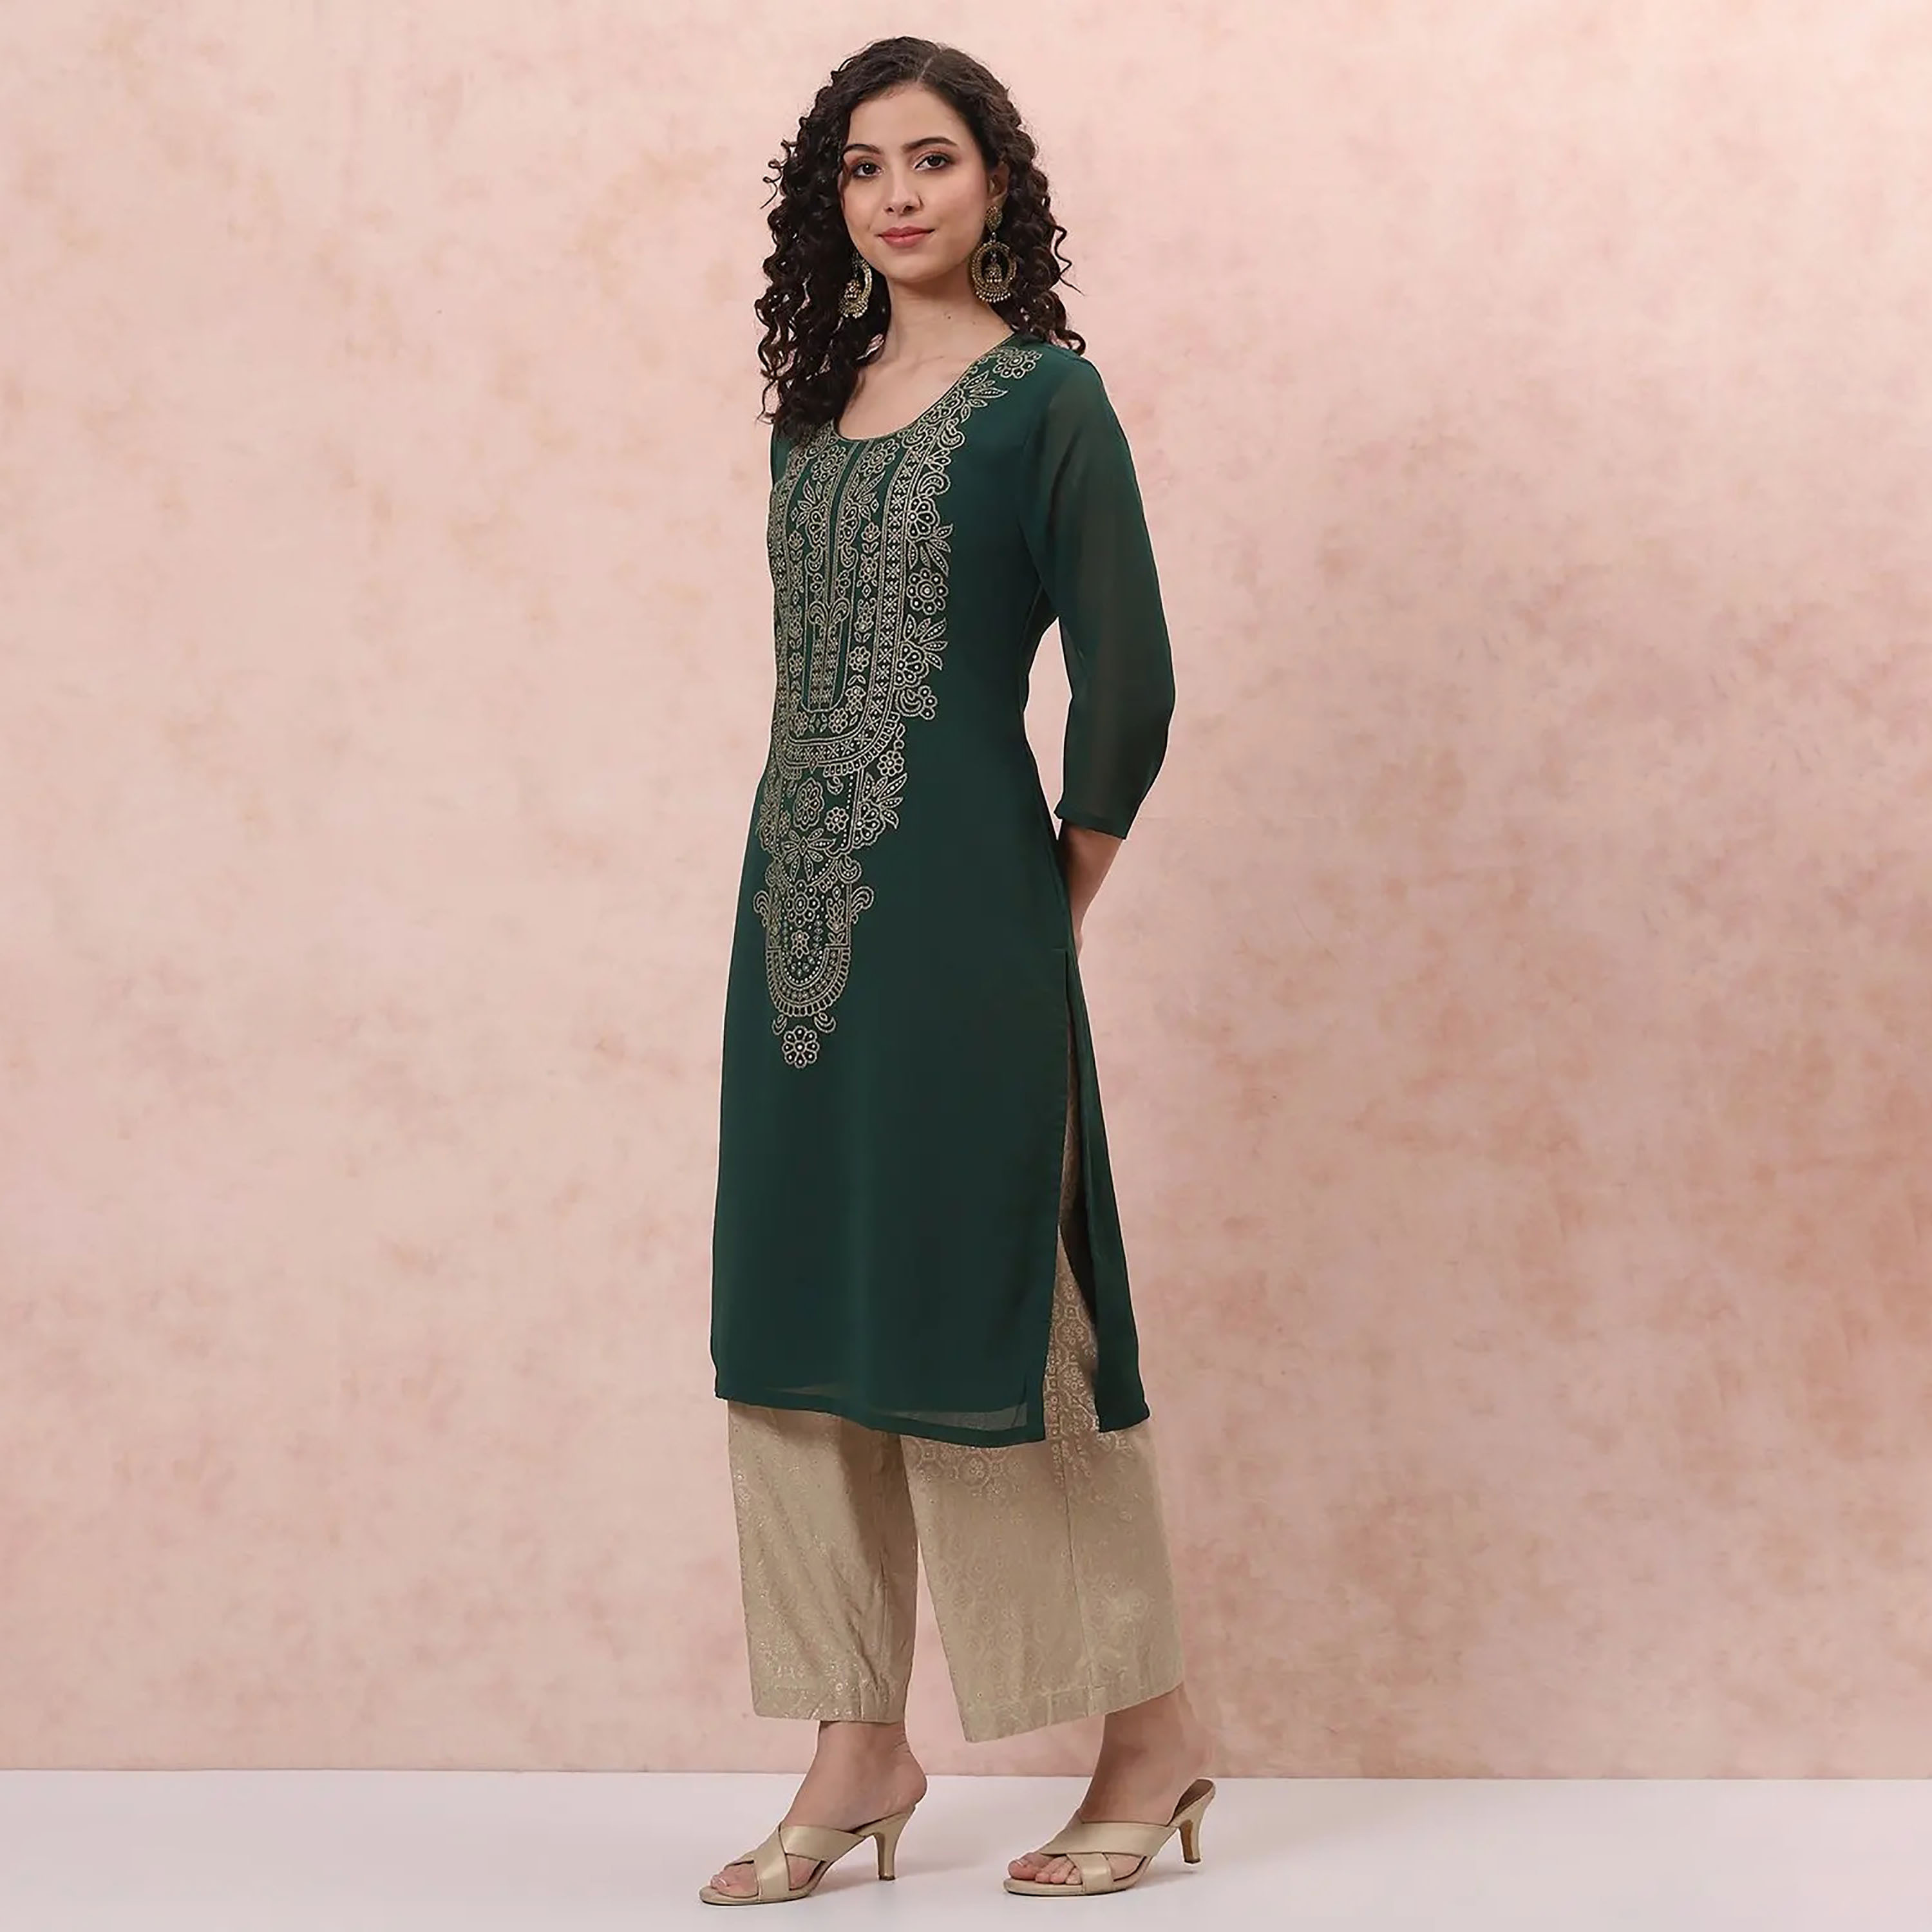 Online Fashion Flat 50% Off Sale in Pakistan - BuyZilla.Pk